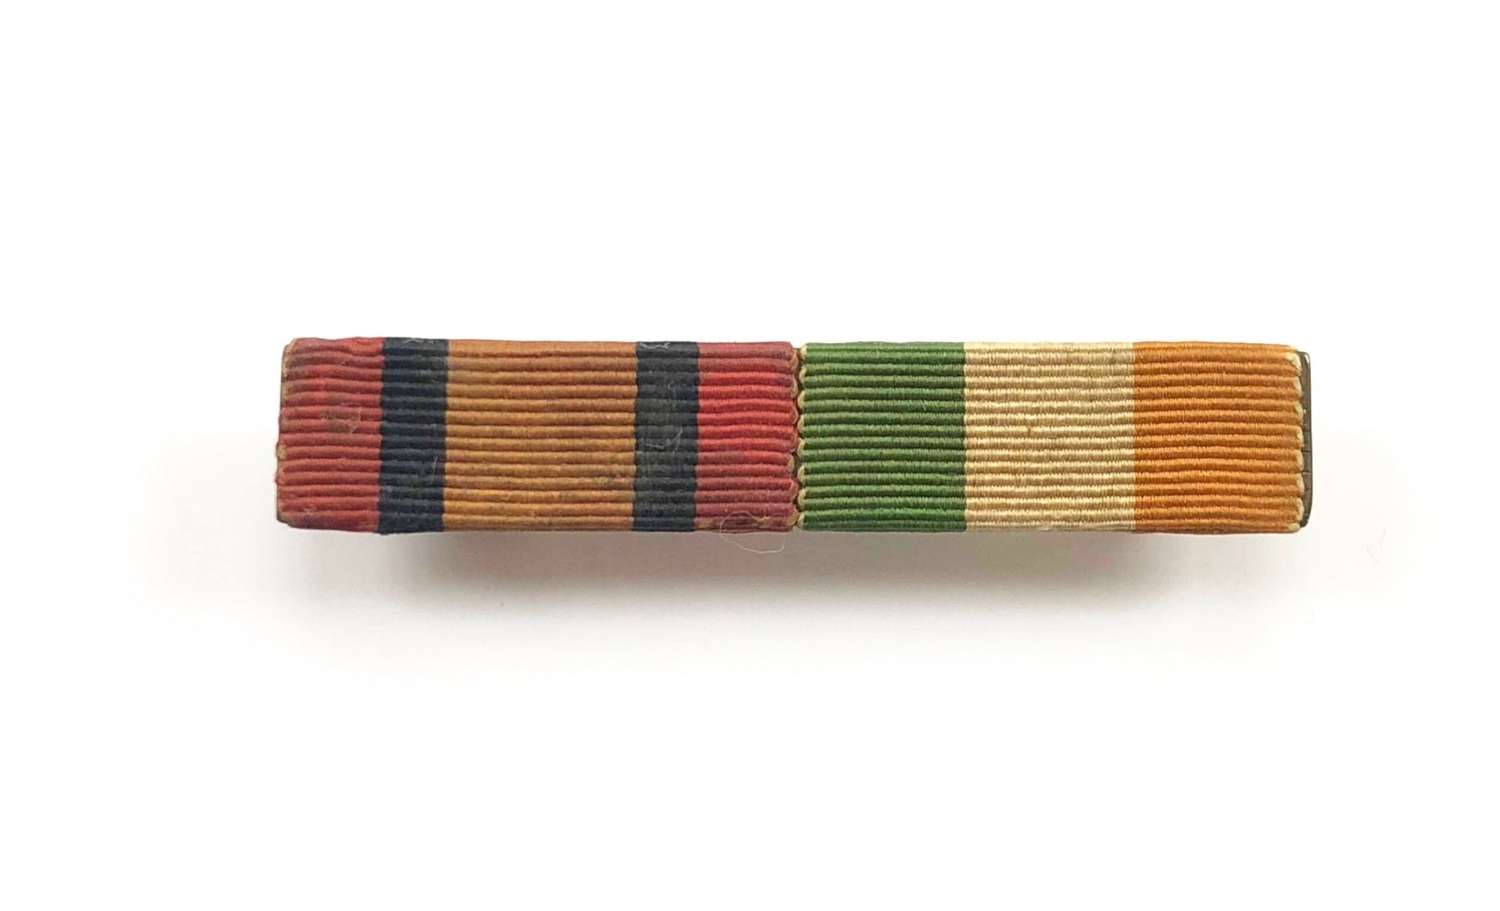 Boer War Medals Uniform Ribbon Bar.